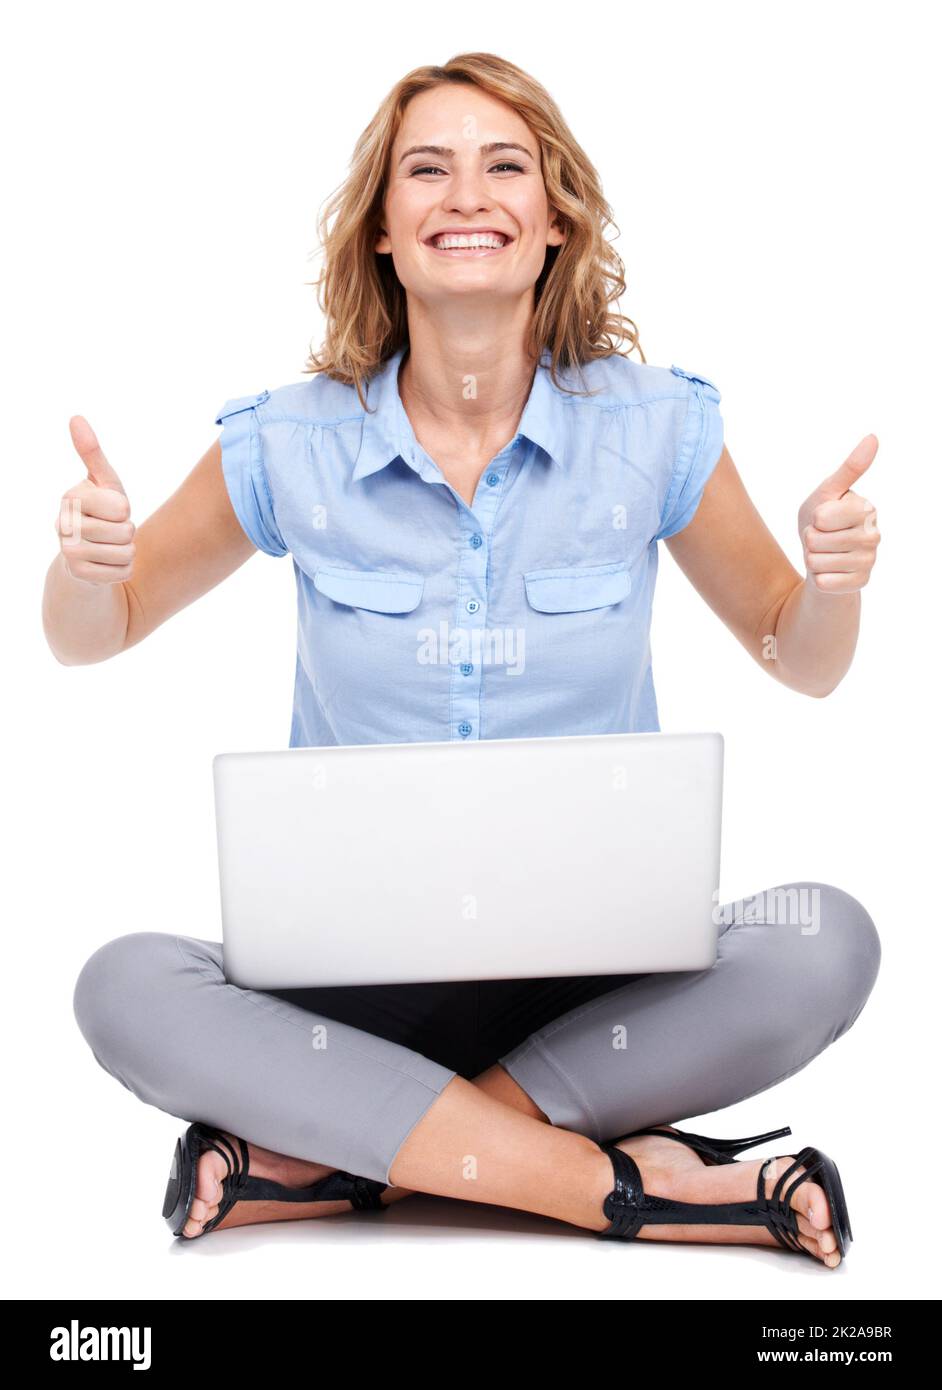 Darti il thumbsup. Ritratto a tutta lunghezza di una giovane donna attraente che dà due pollici in su mentre usando il suo laptop. Foto Stock